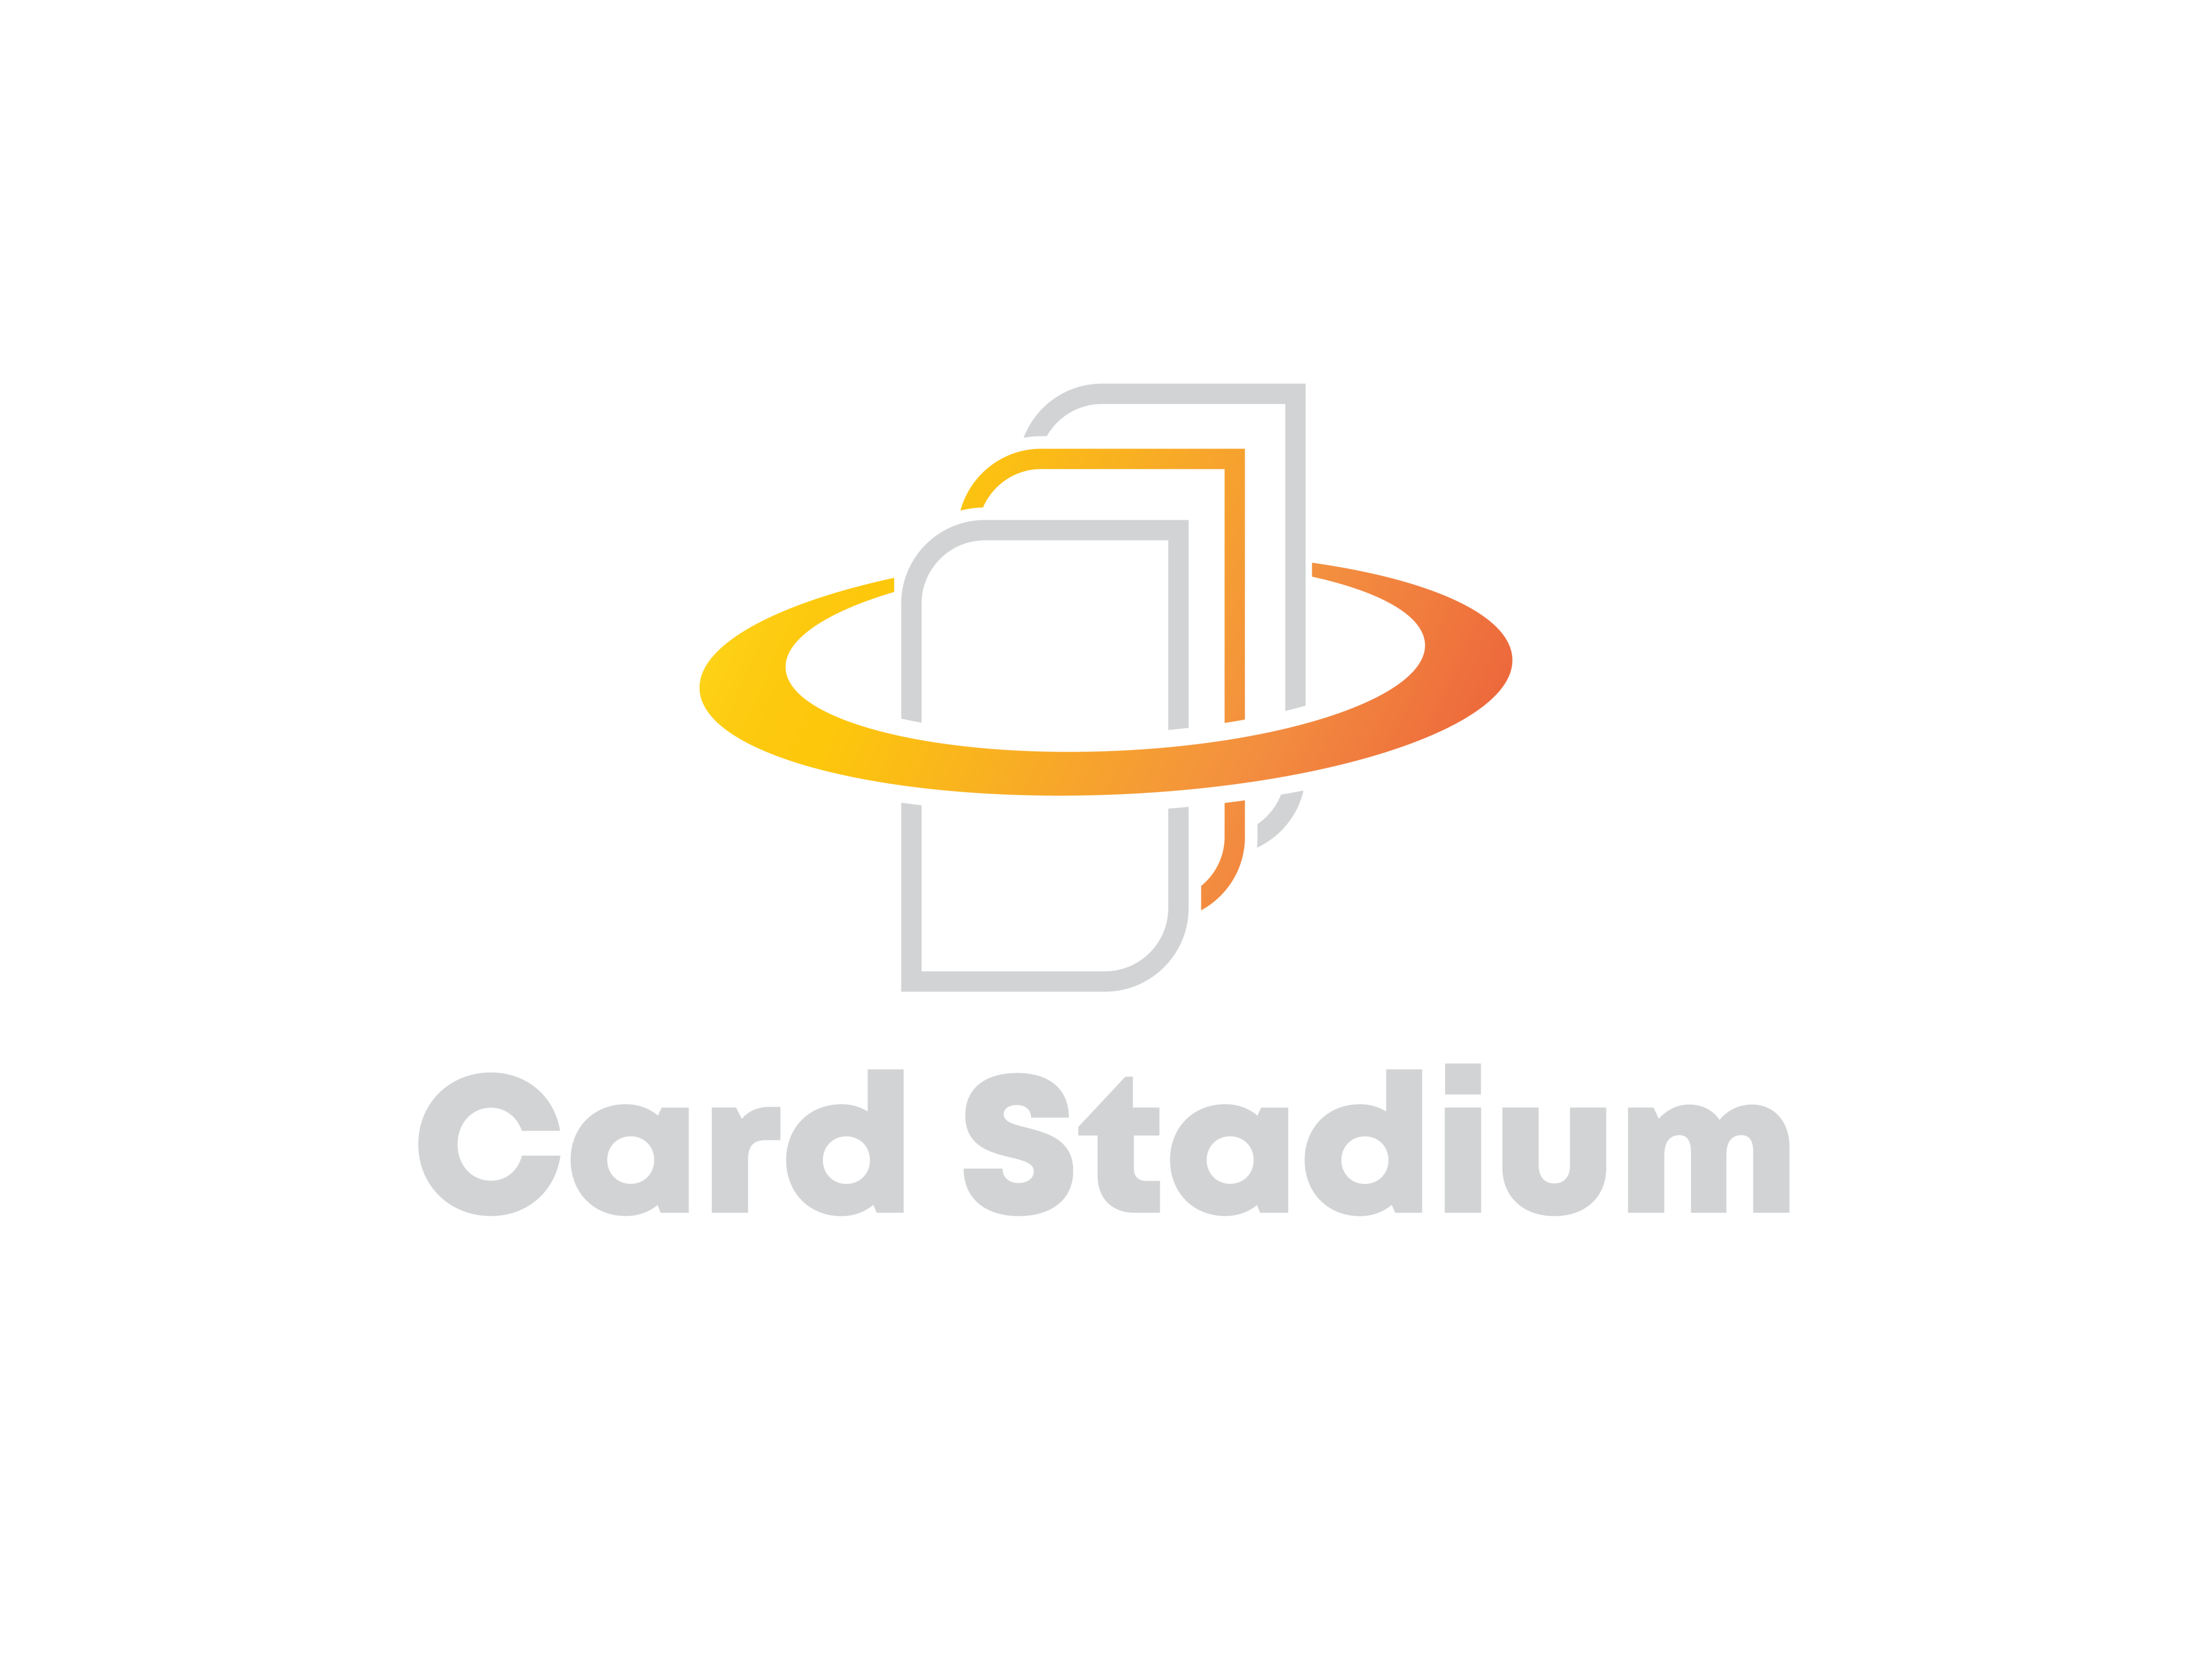 Card Stadium